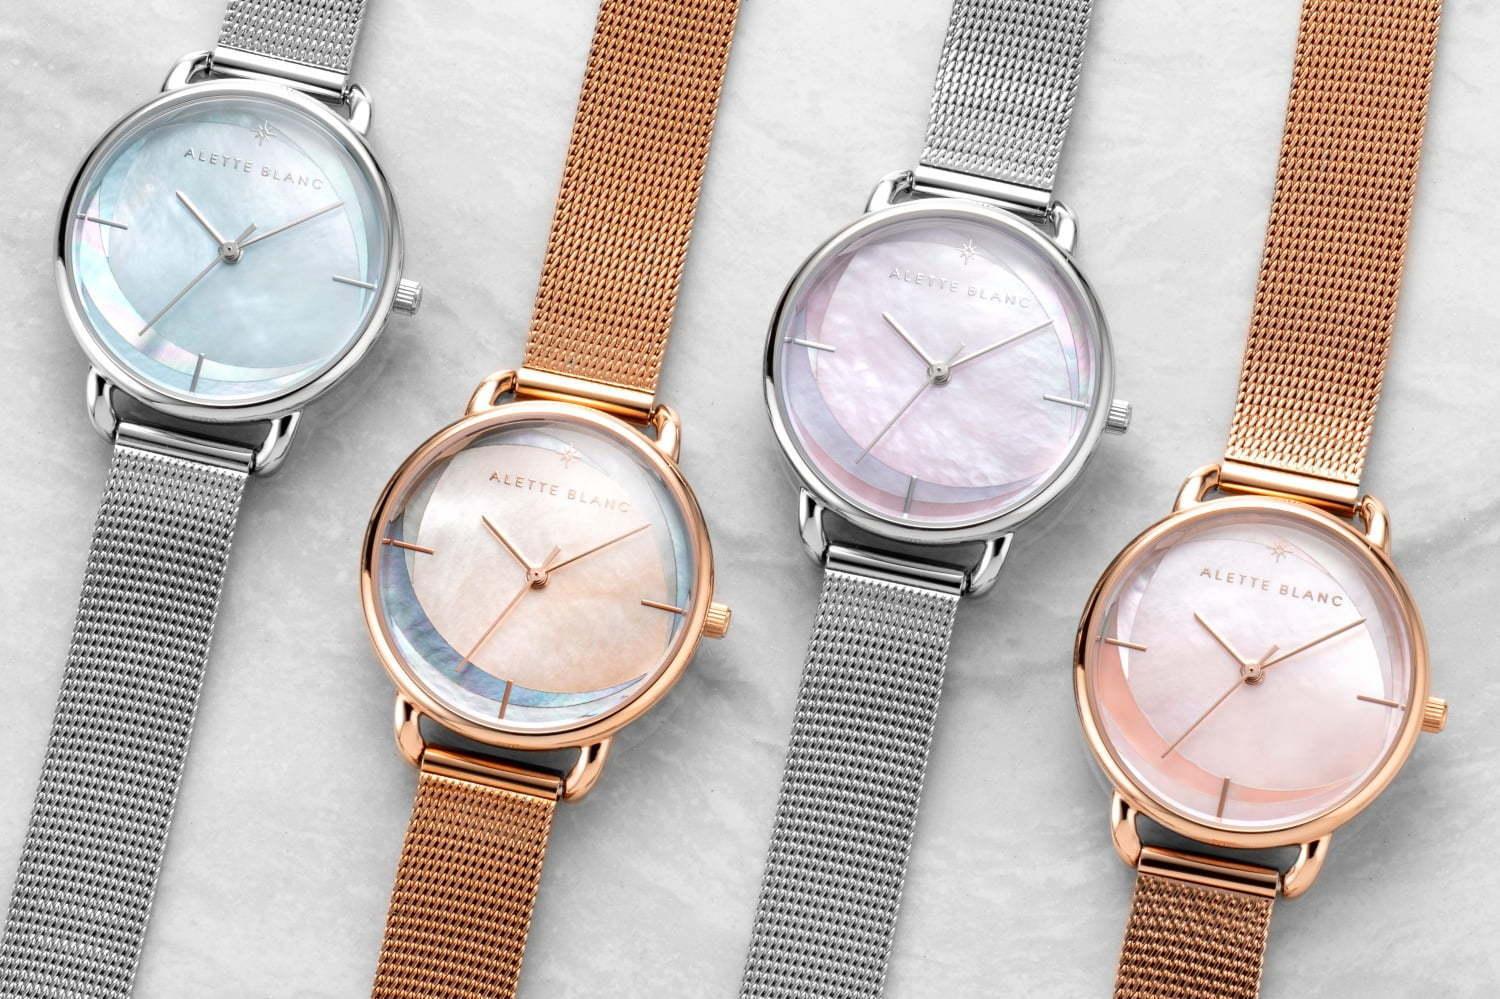 アレットブランの新作腕時計「ブリーズ コレクション」3色パールで“そよかぜ”を表現 